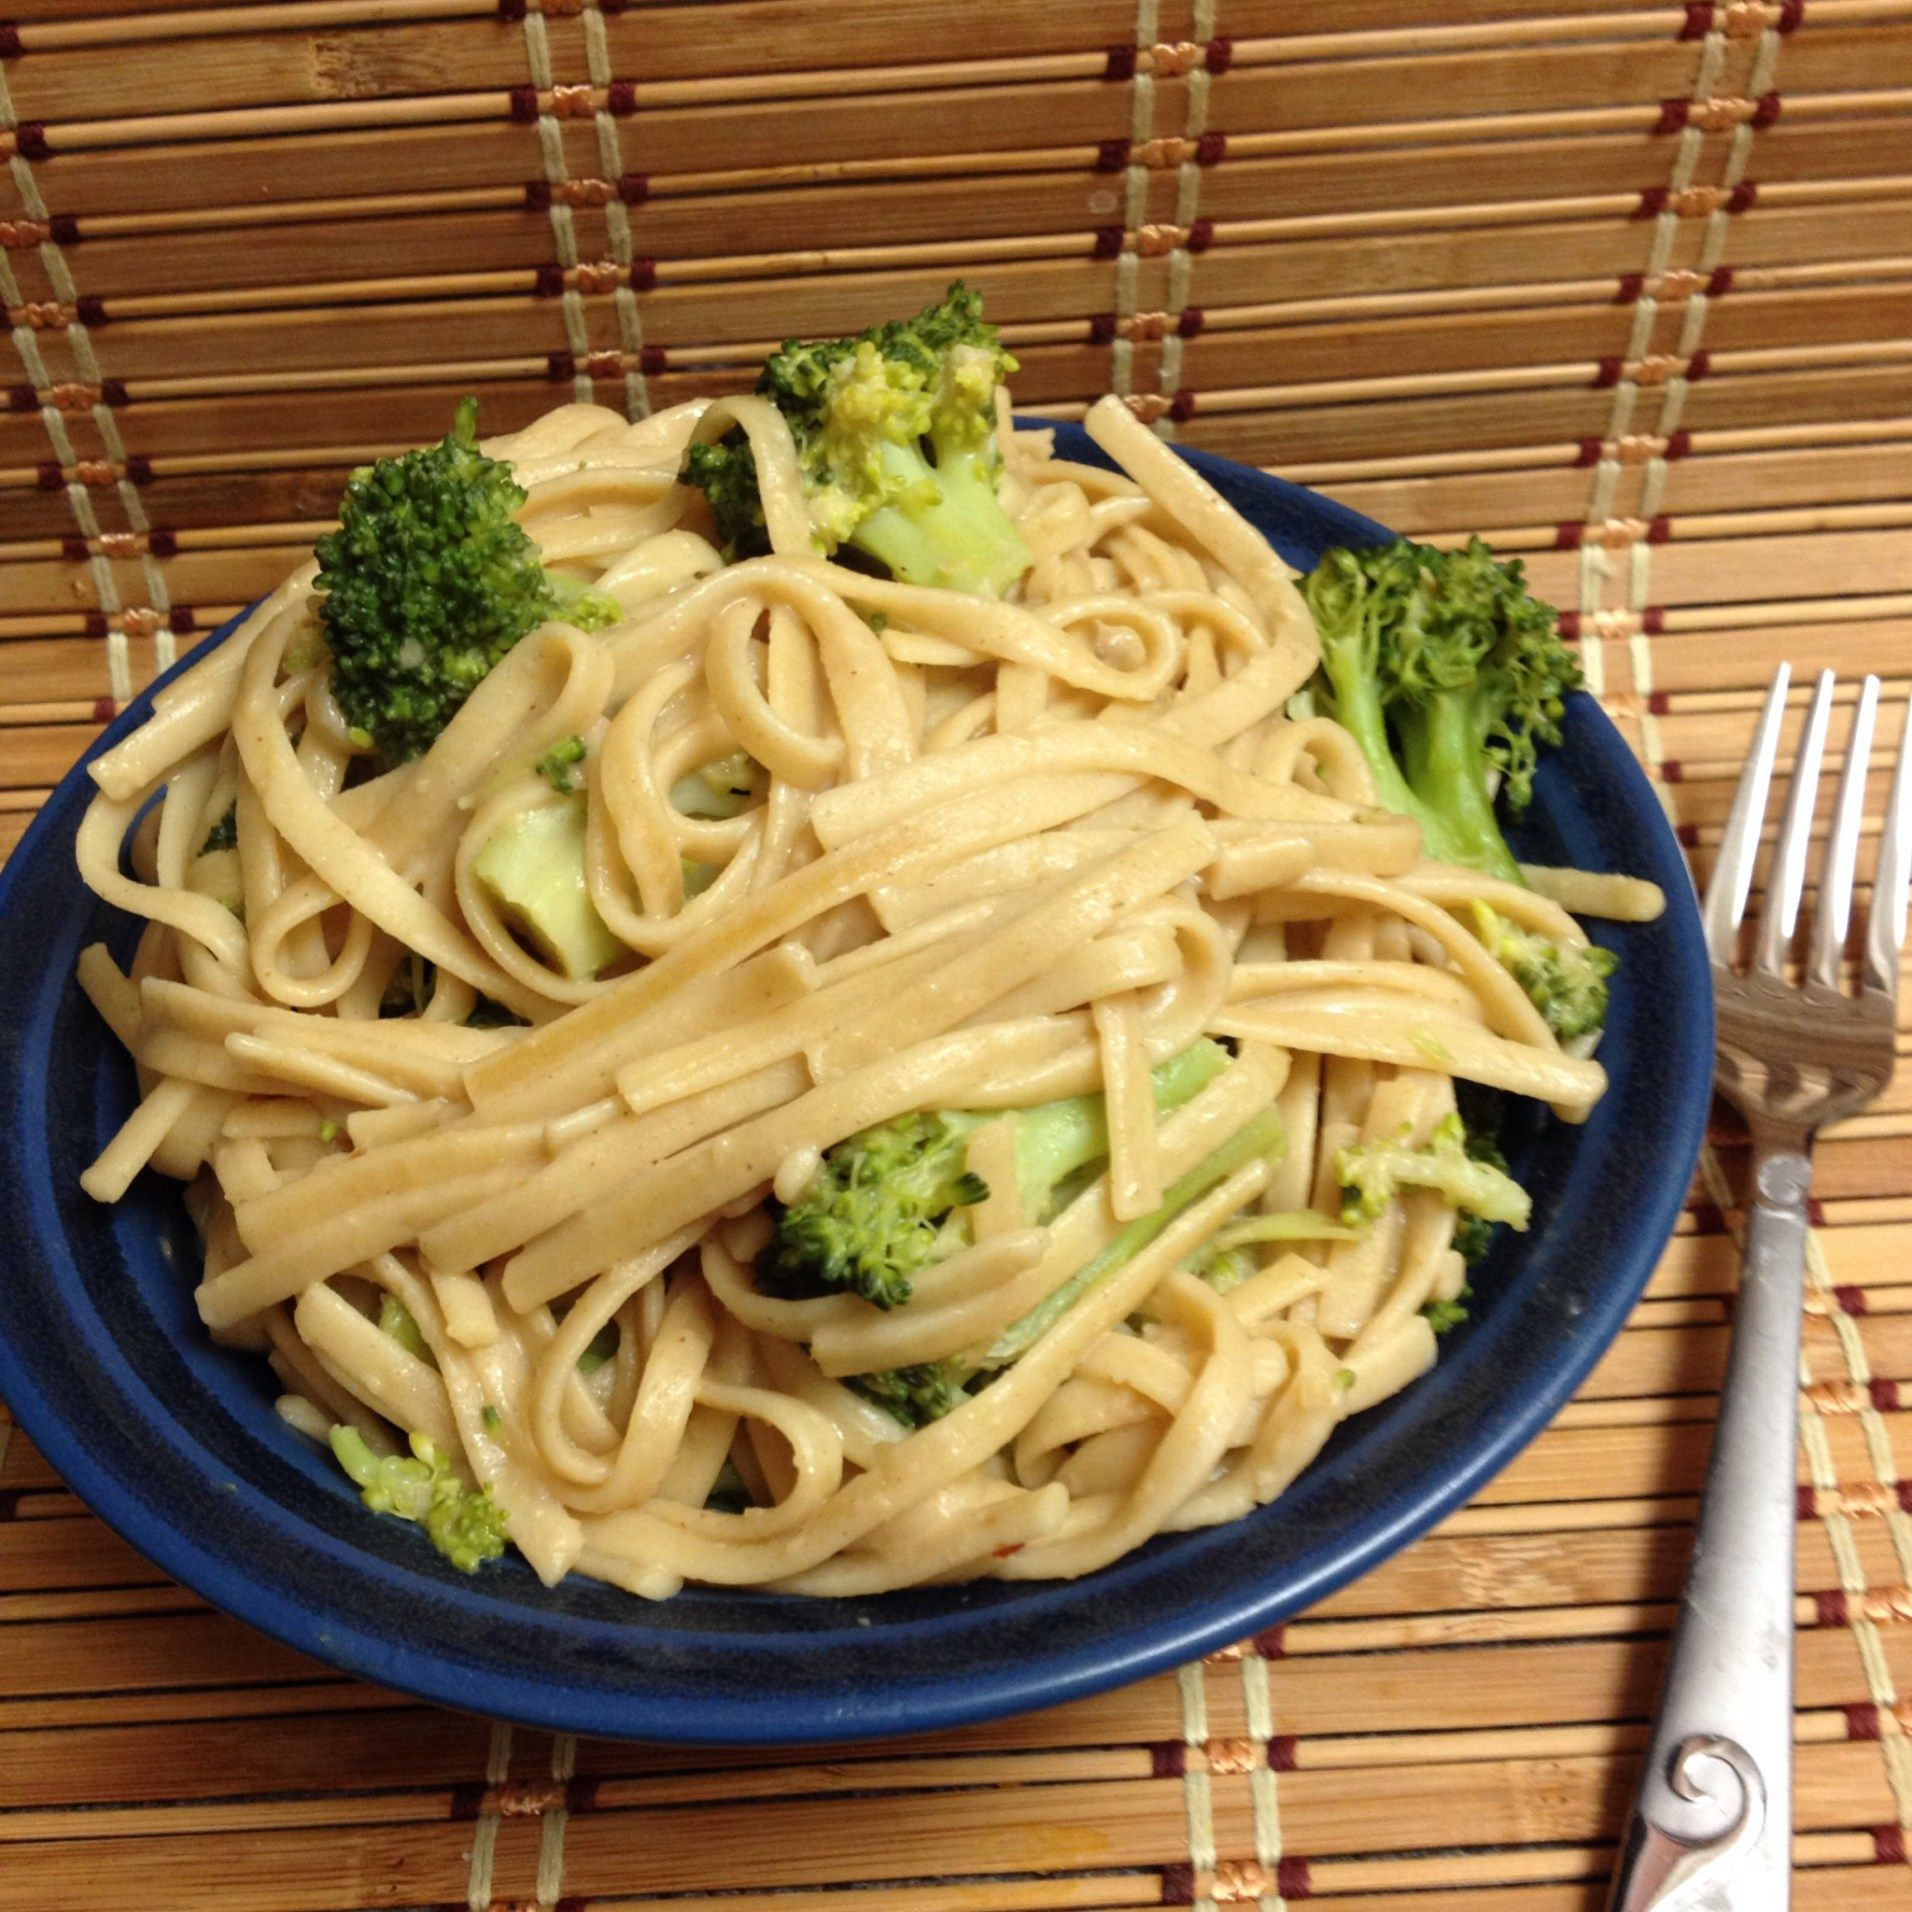 Plant Based Recipes Dinner Forks Over Knives
 Peanut noodles with Broccoli Forks Over Knives Cookbook